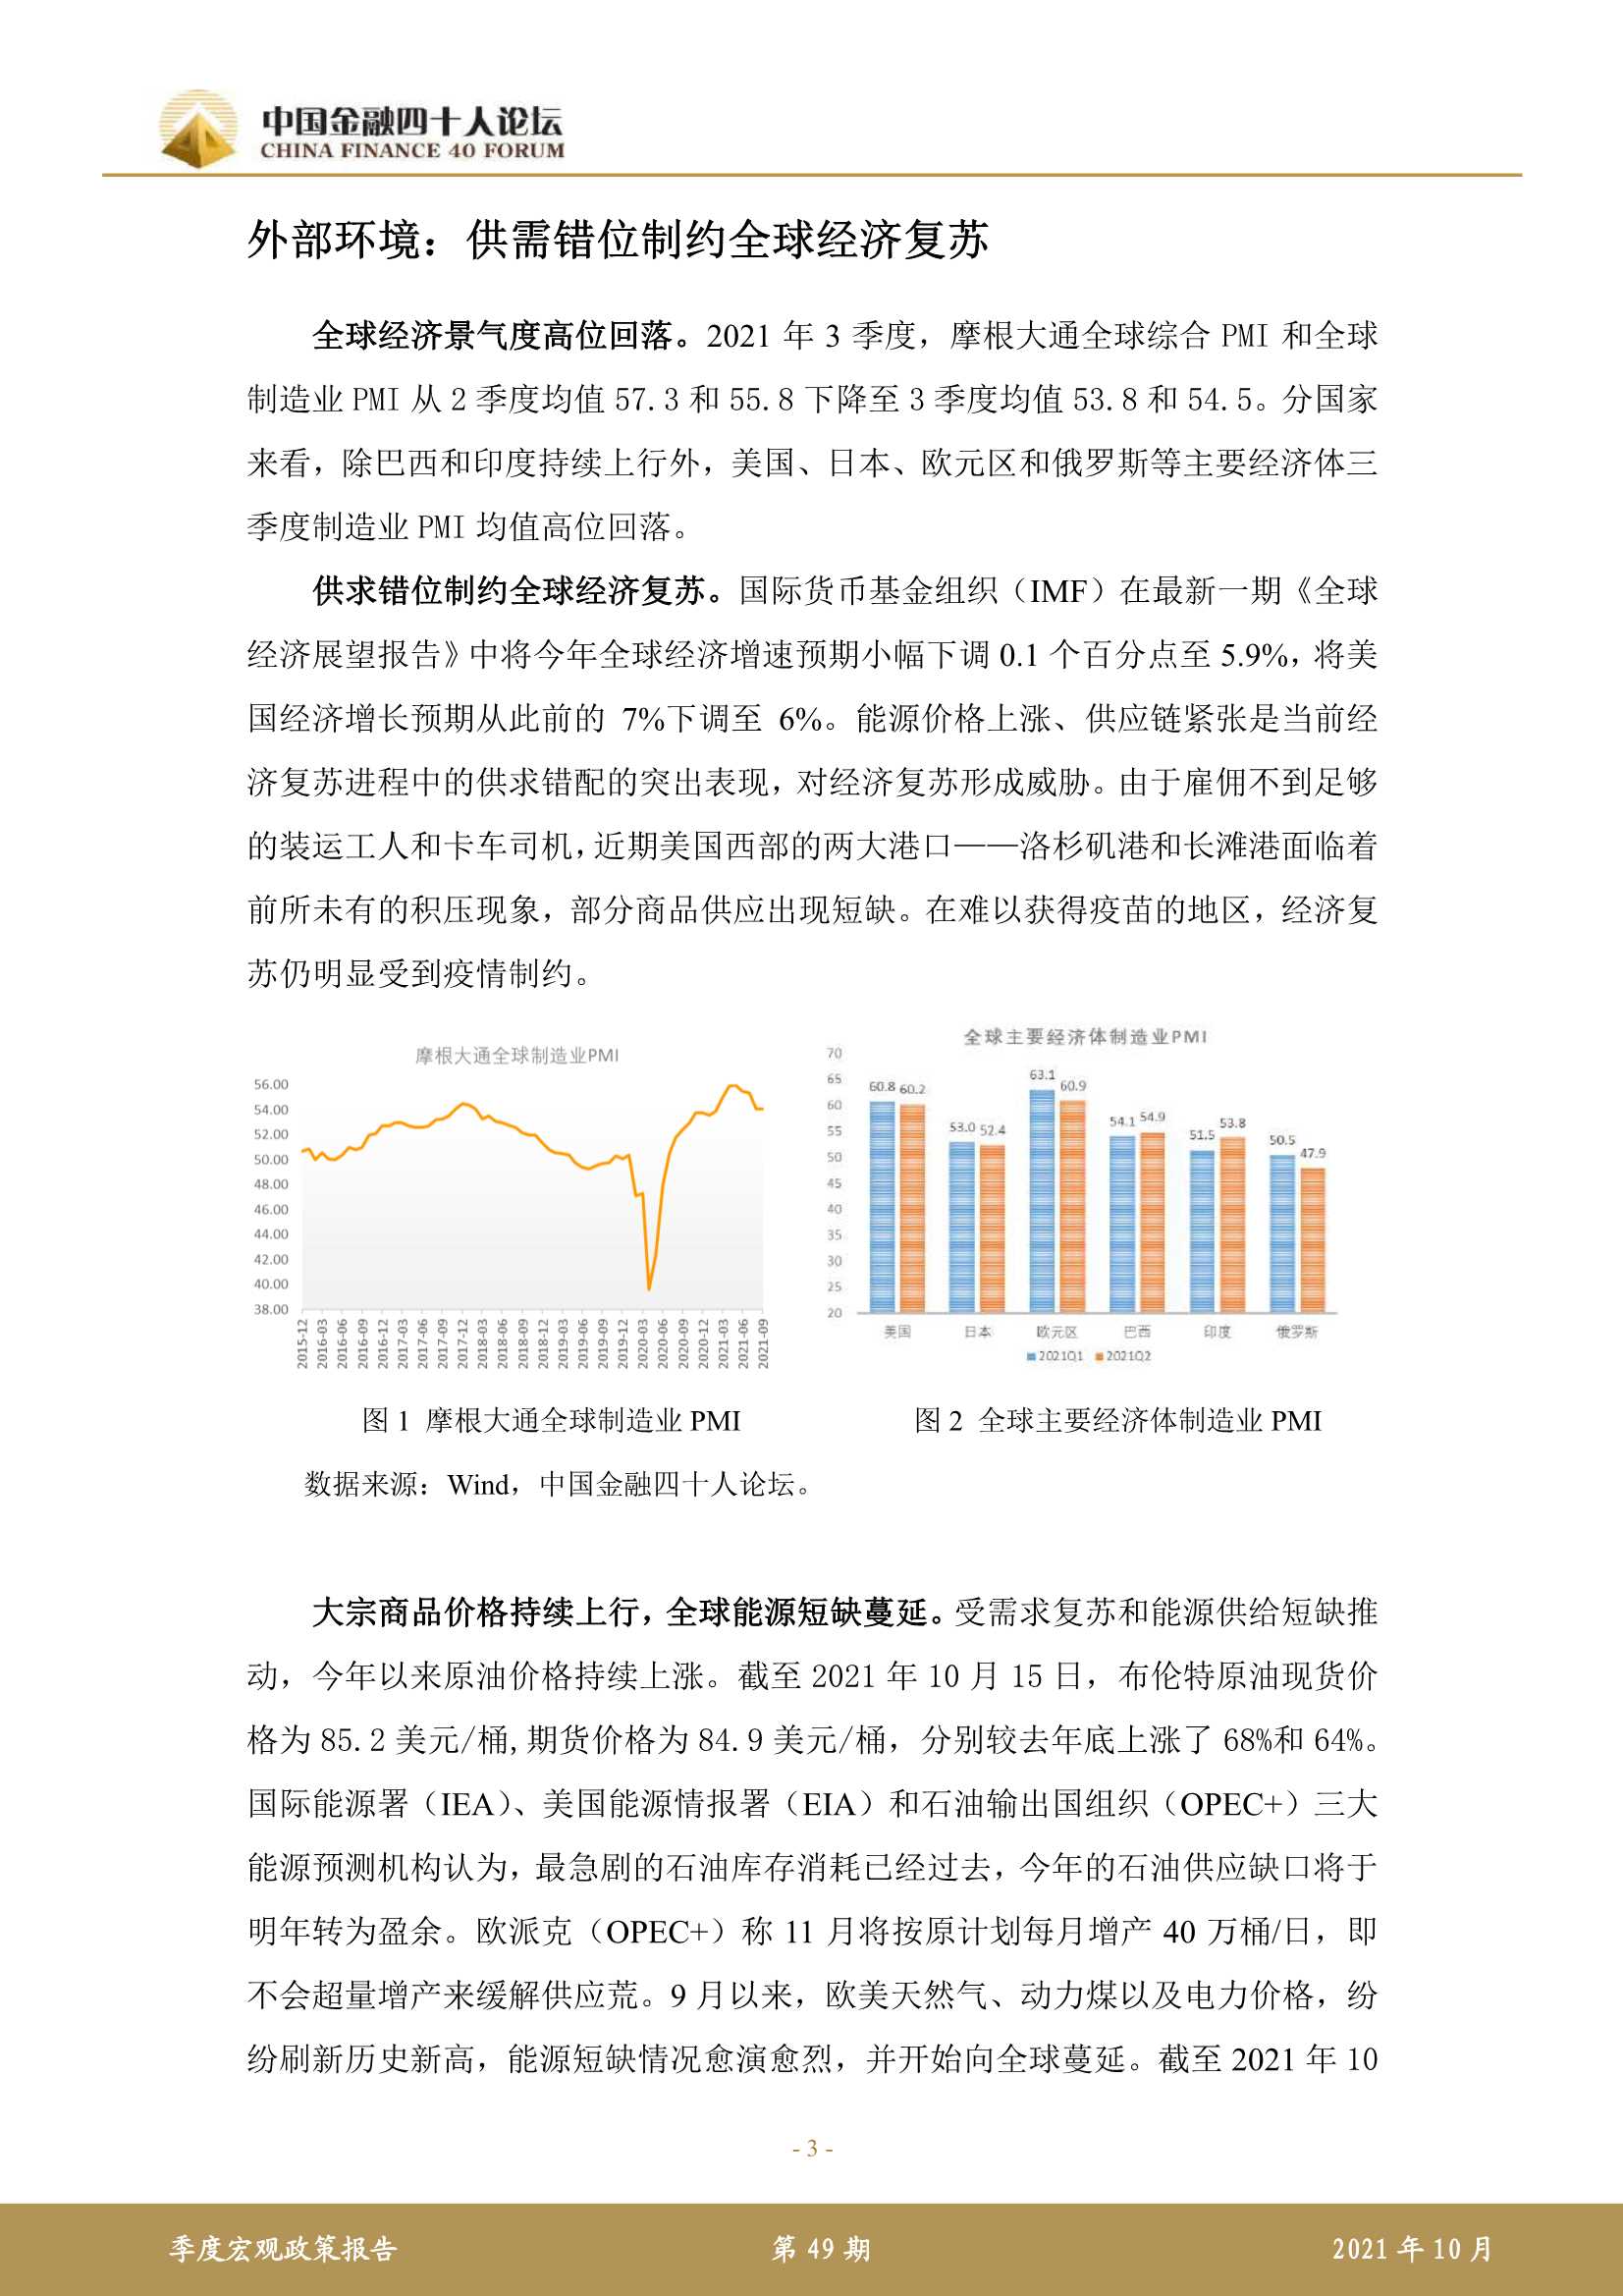 中国金融四十人论坛-2021 年第三季度宏观政策报告-2021.12-16页